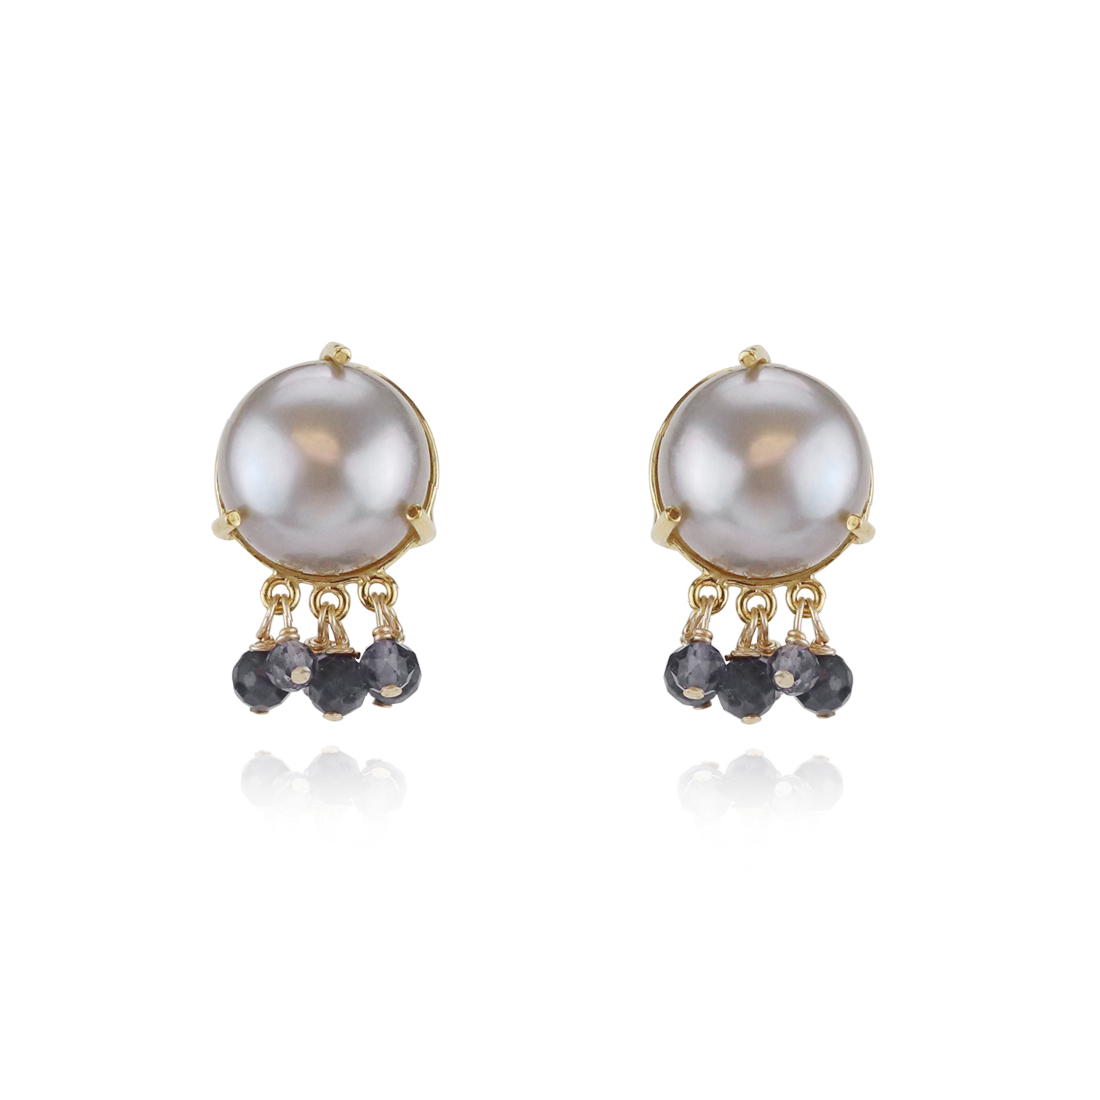 Elegant Grey Pearl Earrings